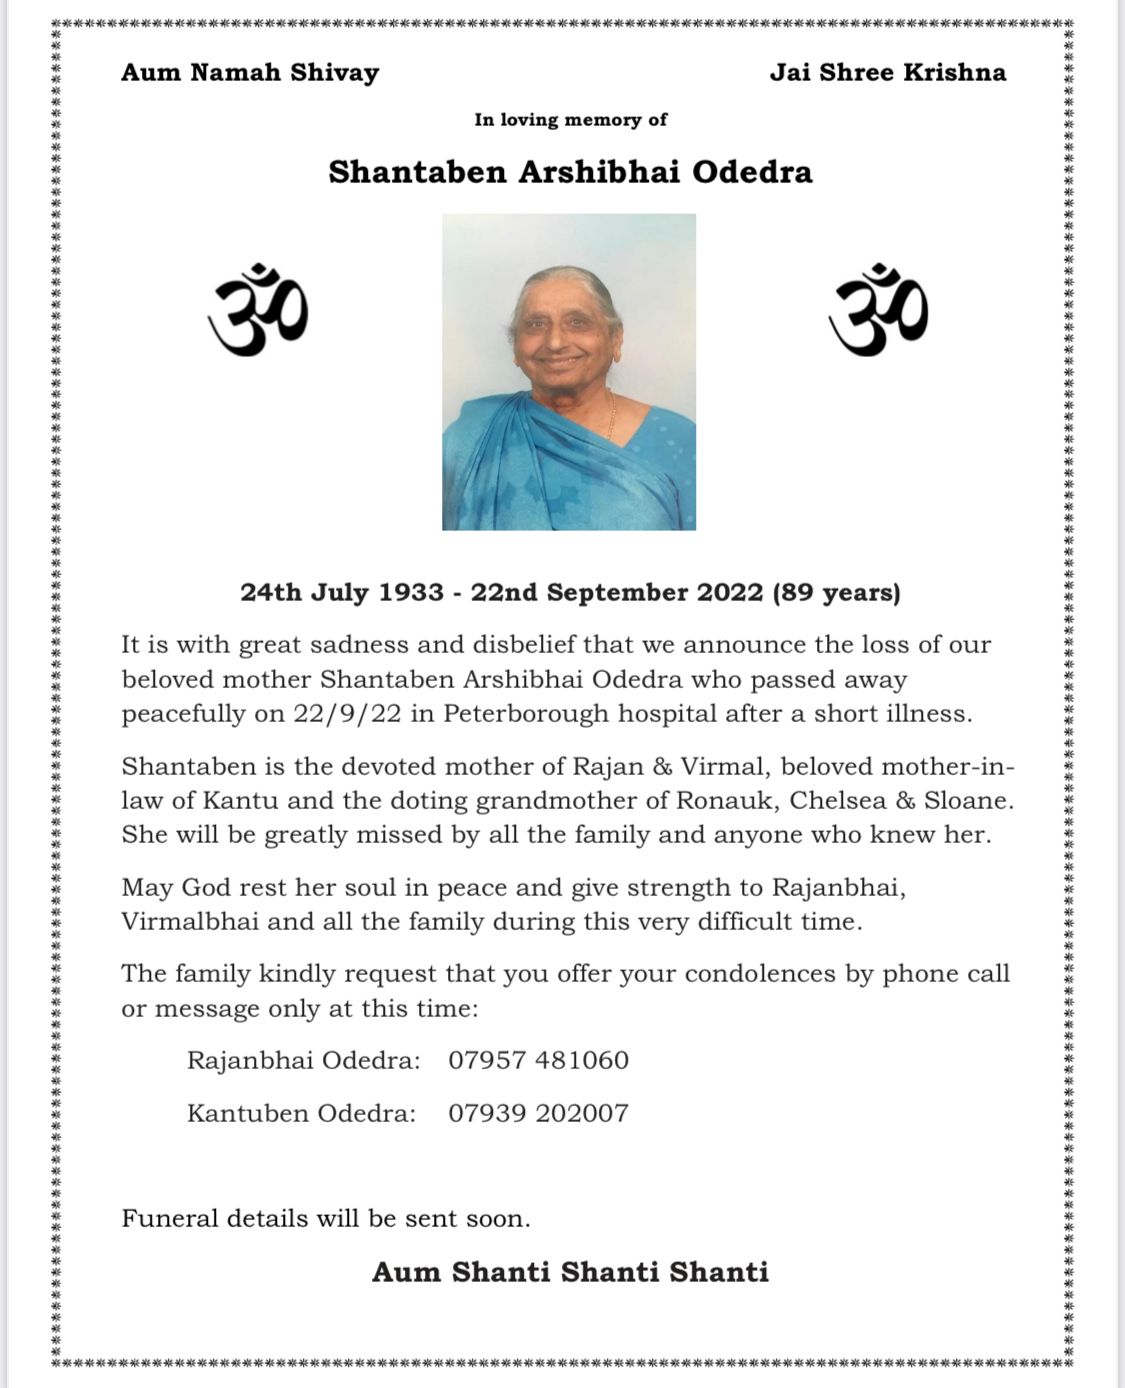 Shantaben Arshibhai Odedra passed away